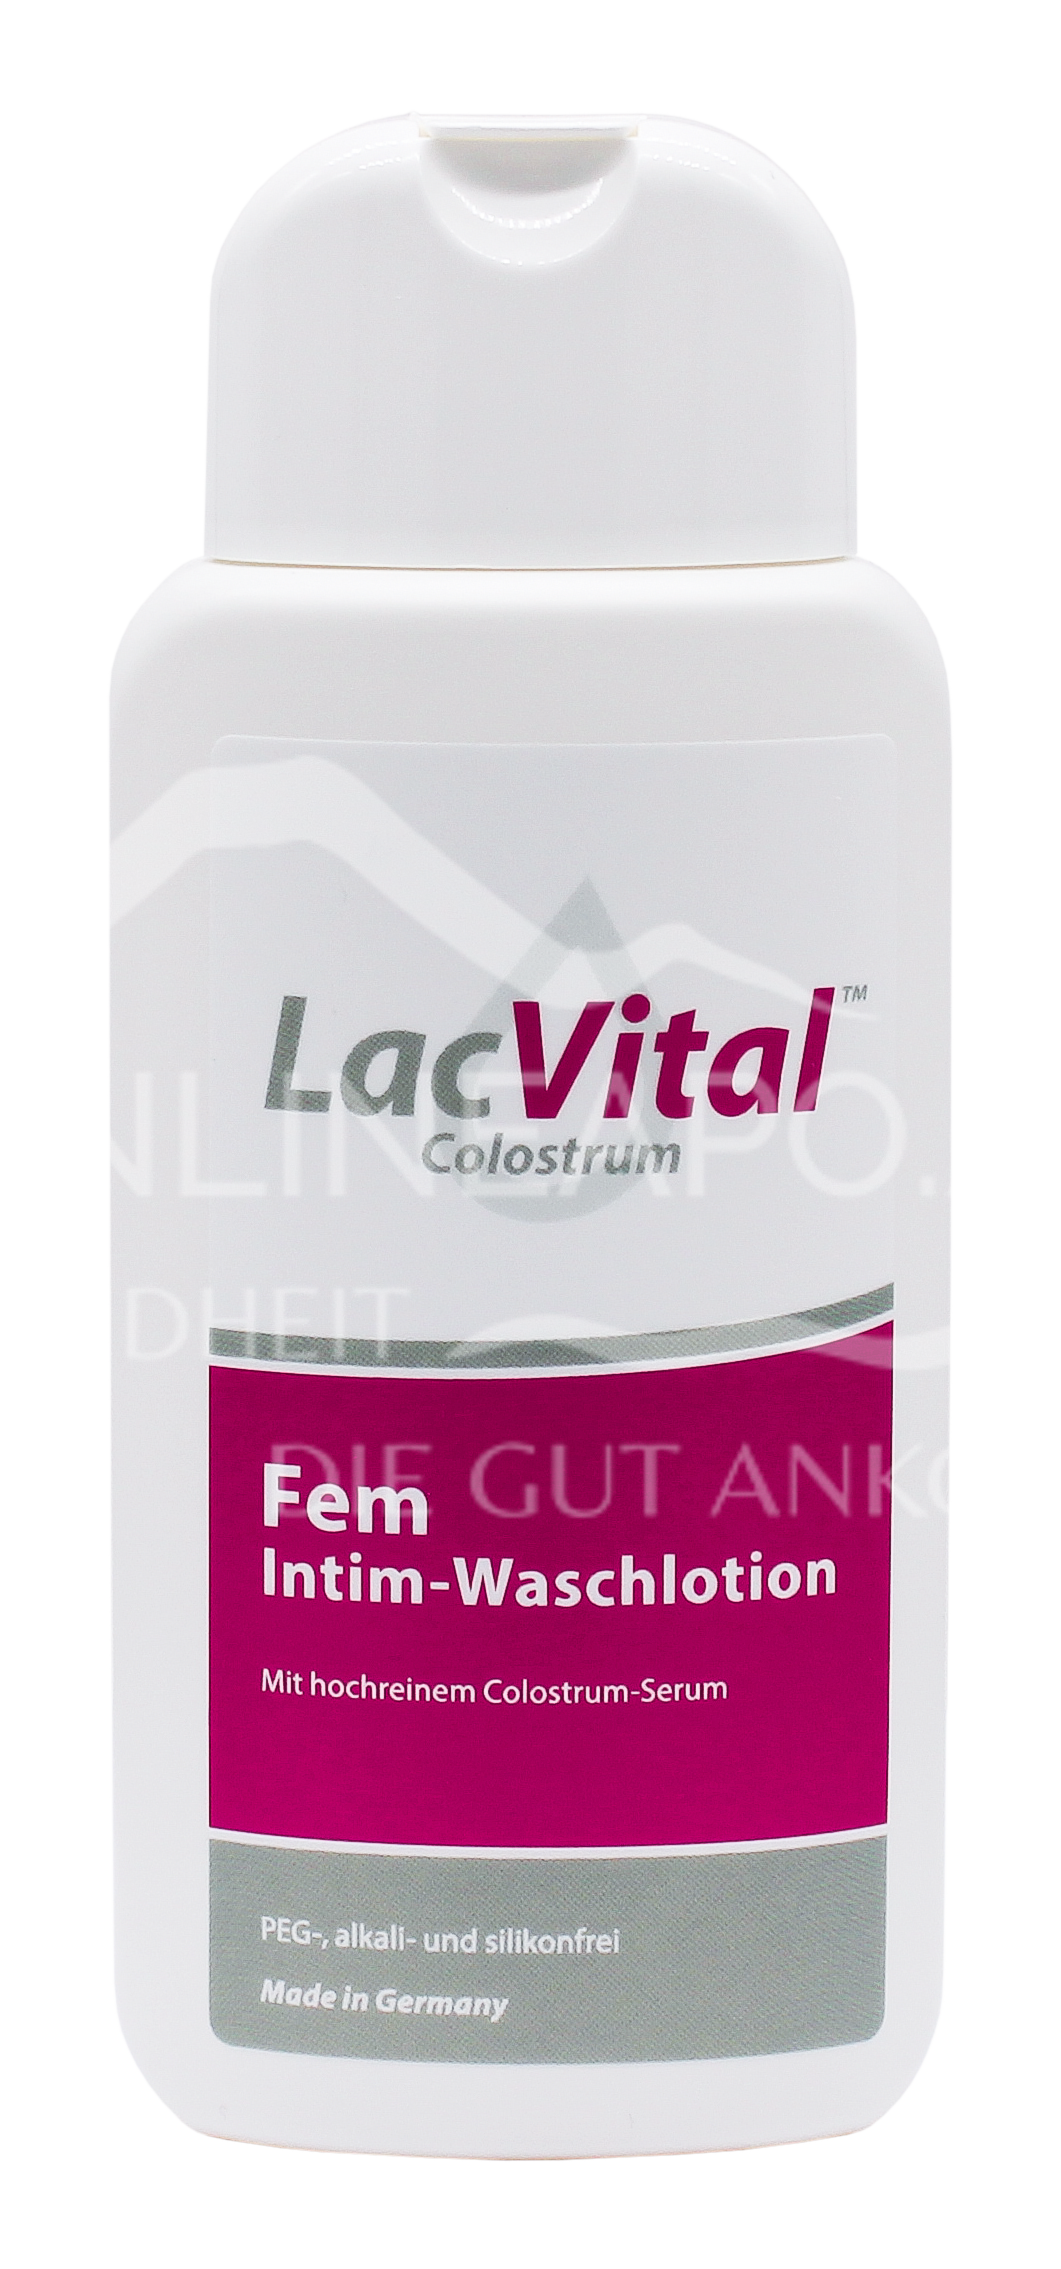 LacVital™ Colostrum FEM Intim-Waschlotion